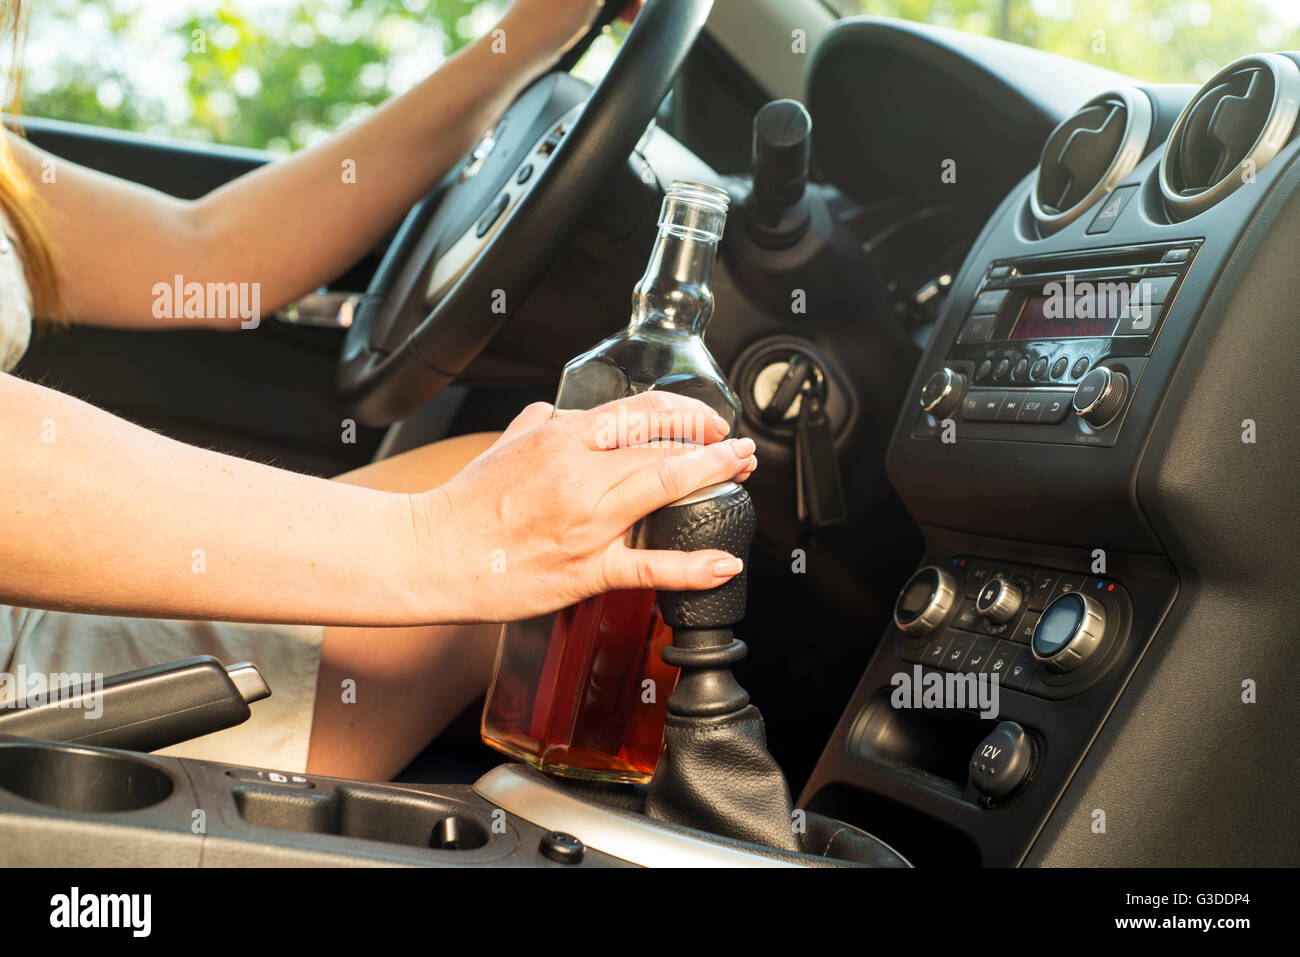 Photo de femme à boire de l'alcool dans la voiture. Banque D'Images